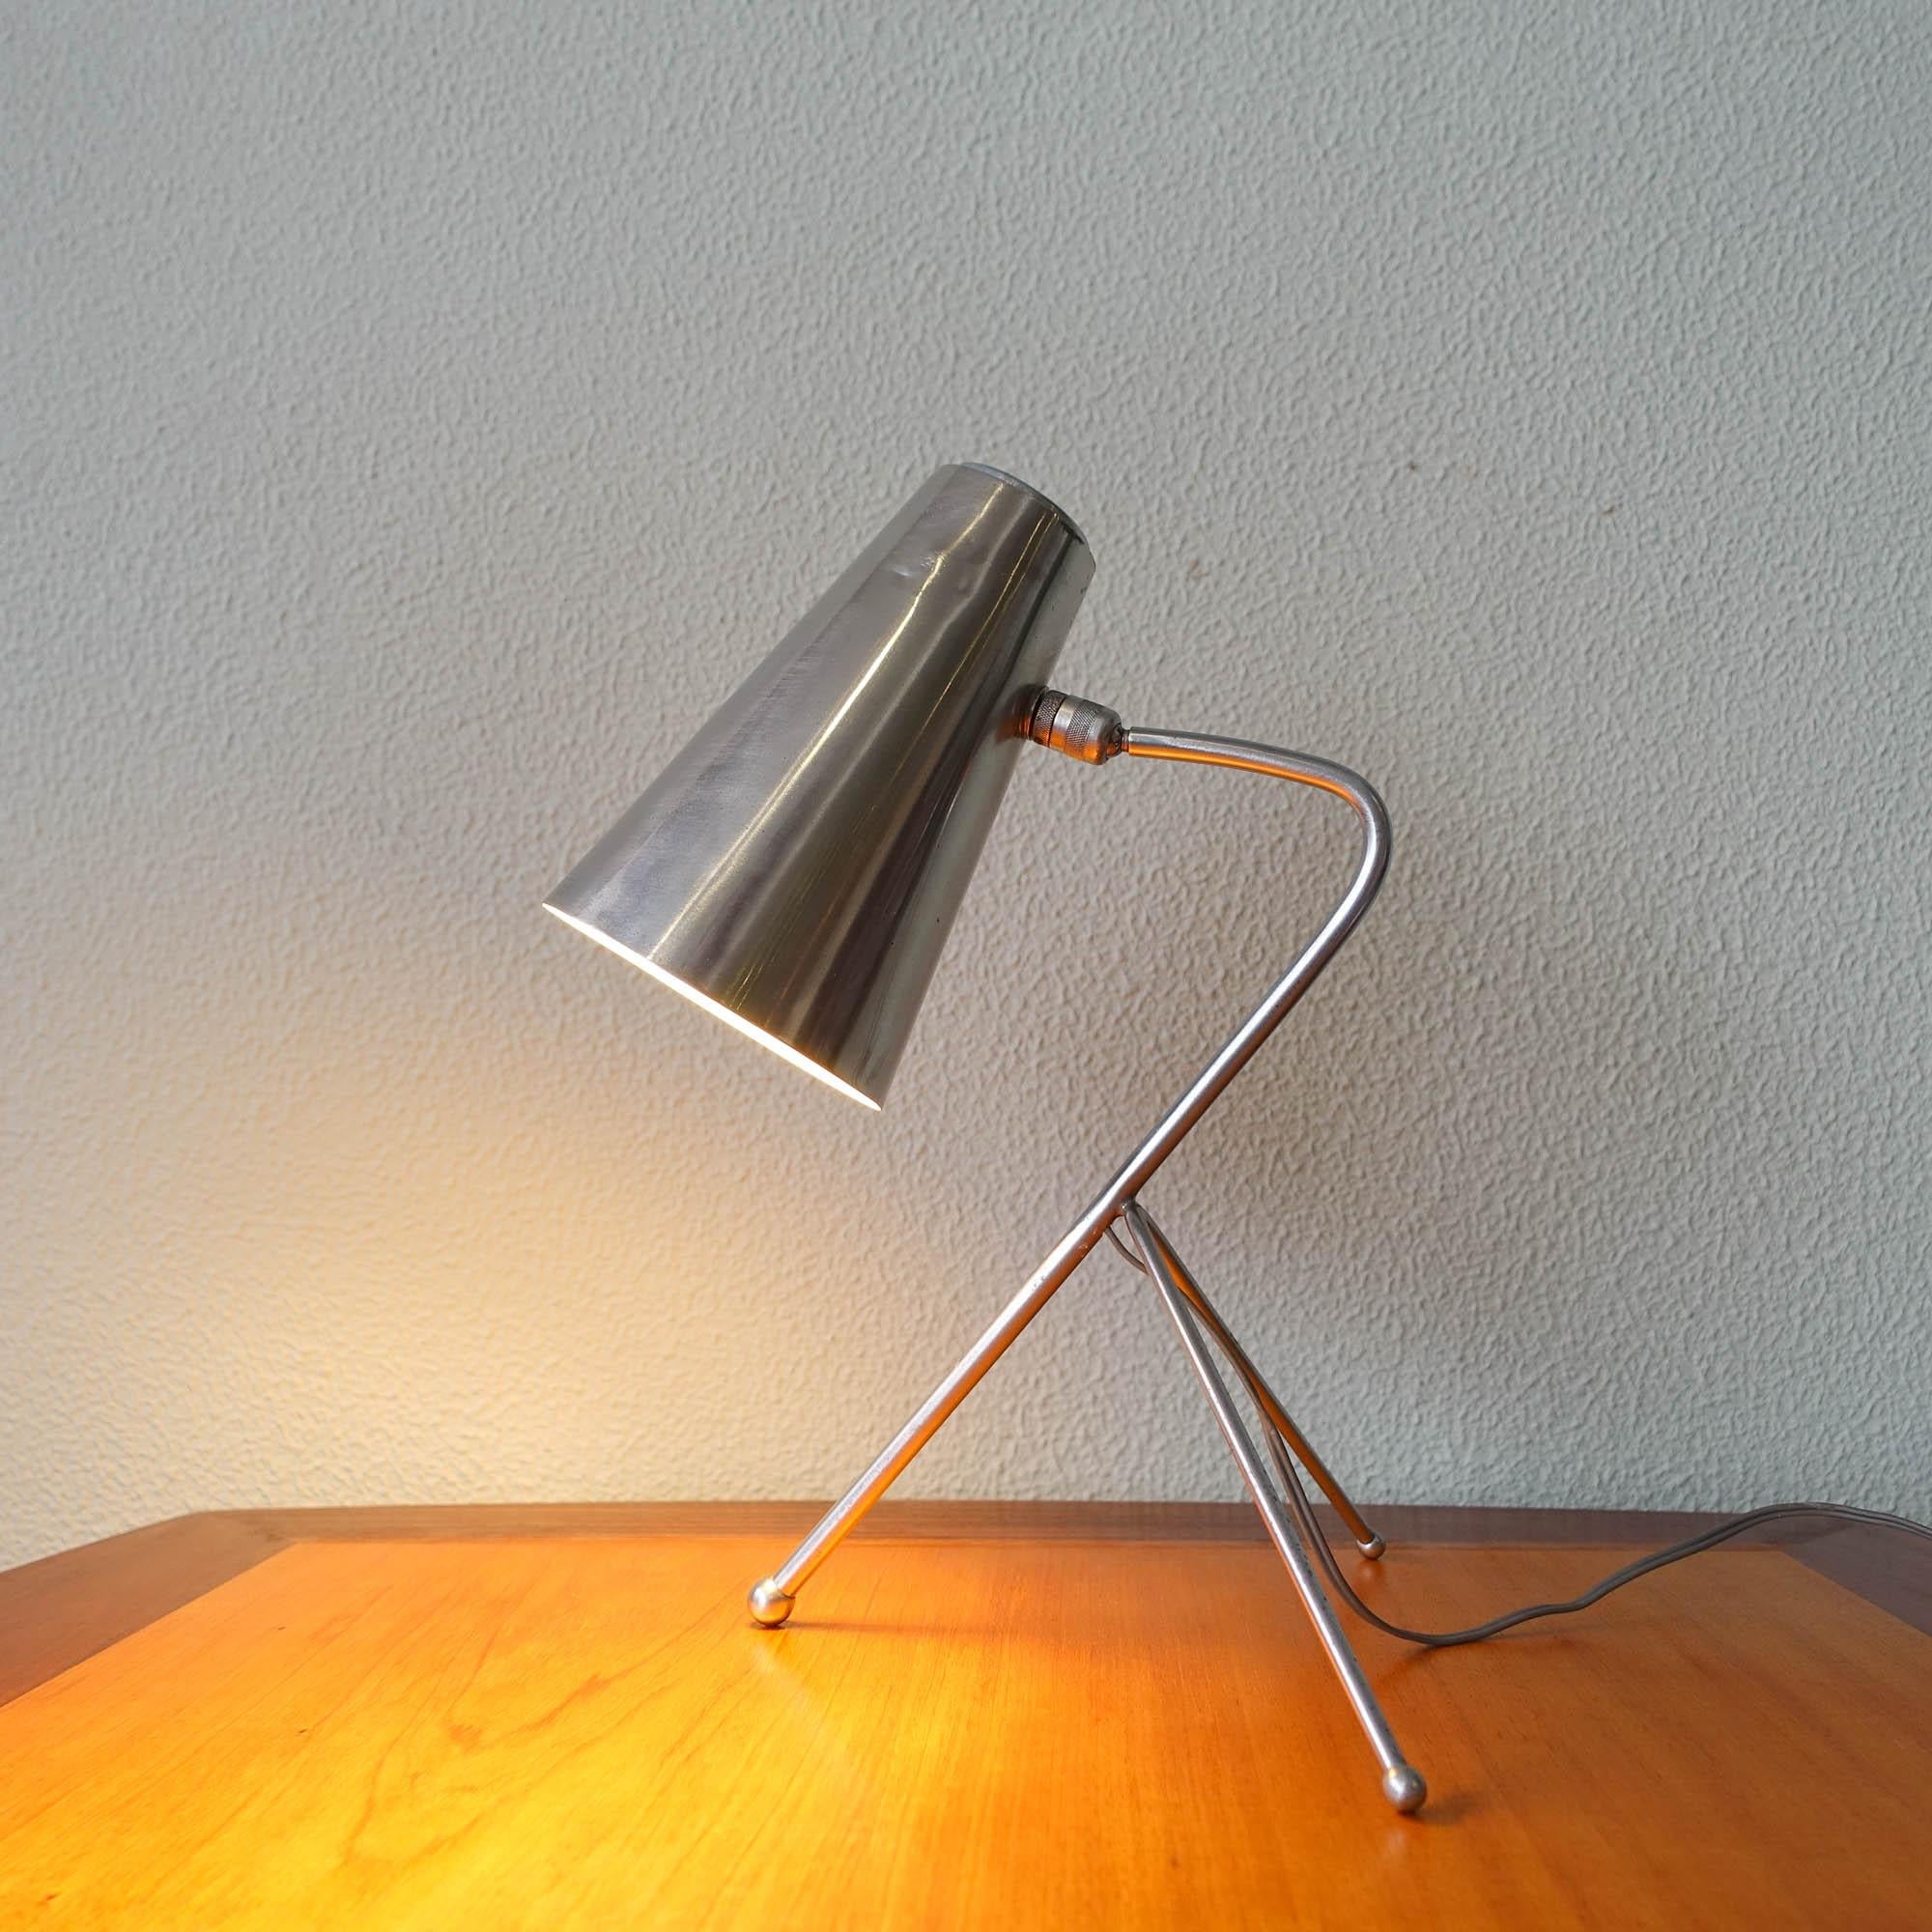 Diese Schreibtischlampe wurde in den 1950er Jahren in Italien entworfen und hergestellt. Sie hat ein elegantes Design mit einem Dreibeinfuß und einem Lampenschirm aus Aluminium. Der Lampenschirm ist schwenkbar, so dass Sie ihn auf verschiedene Weise